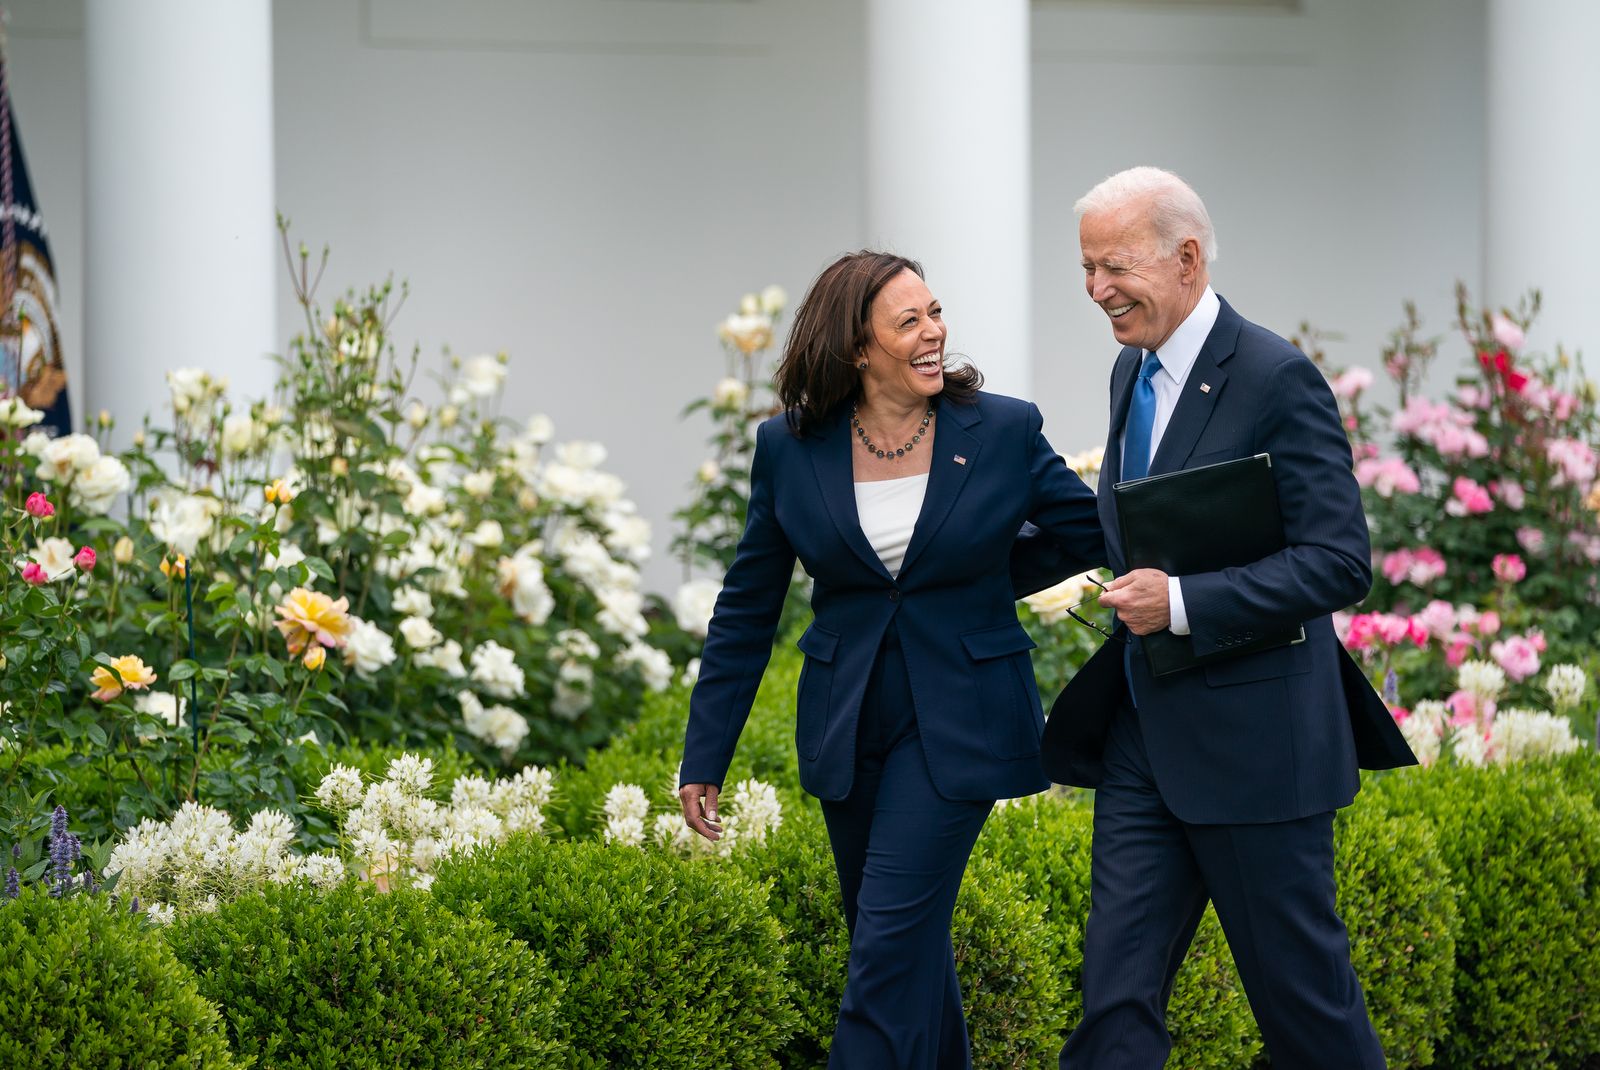 Joe Biden con Kamala Harris, casi con toda seguridad próxima candidata demócrata a Presidenta de Estados Unidos.